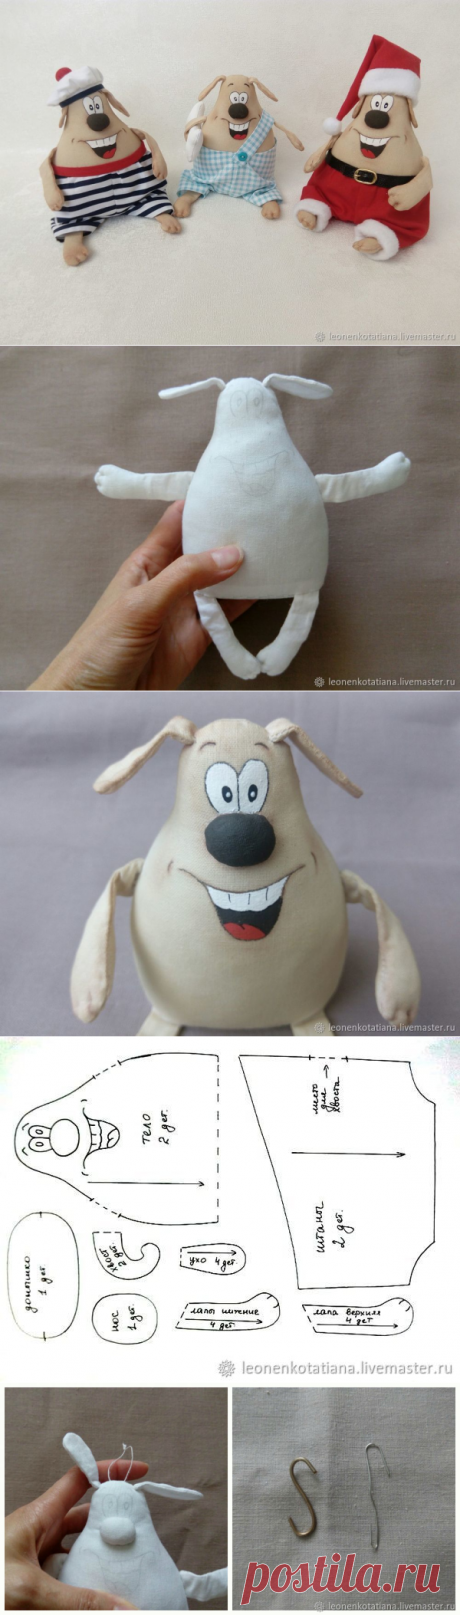 Шьем веселую собачку — символ Нового года - Ярмарка Мастеров - ручная работа, handmade